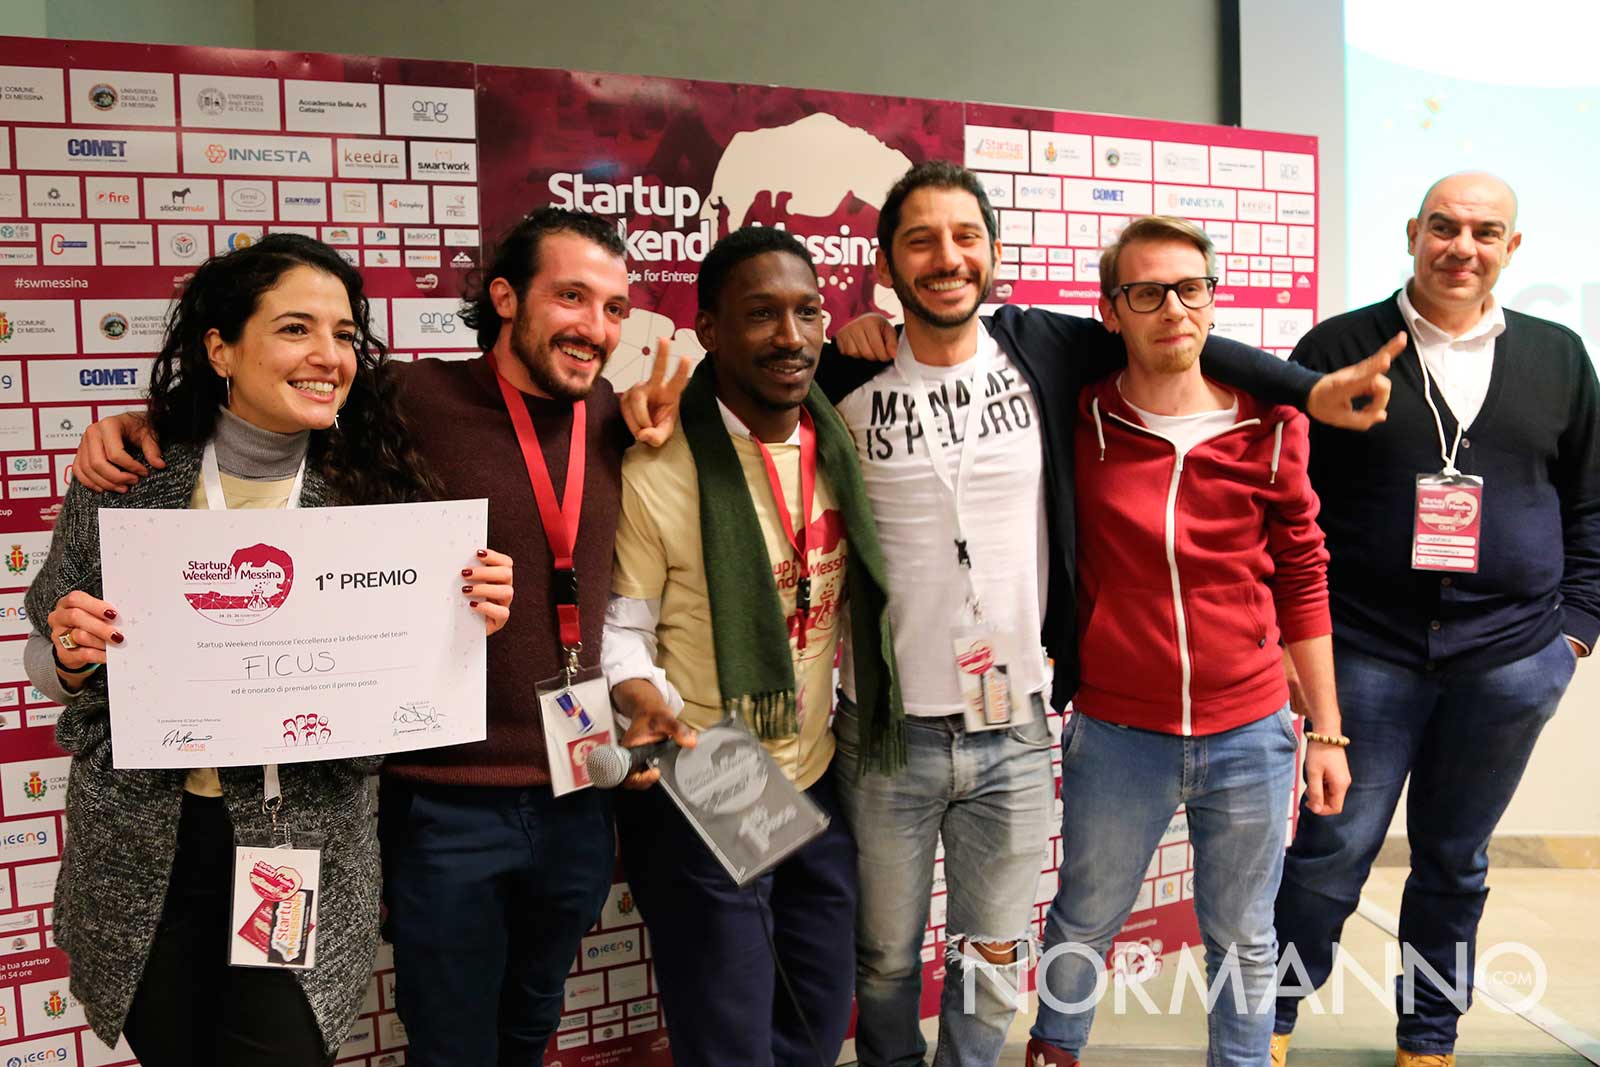 startup weekend messina 2017 - premiazione, i vincitori team ficus - palacultura